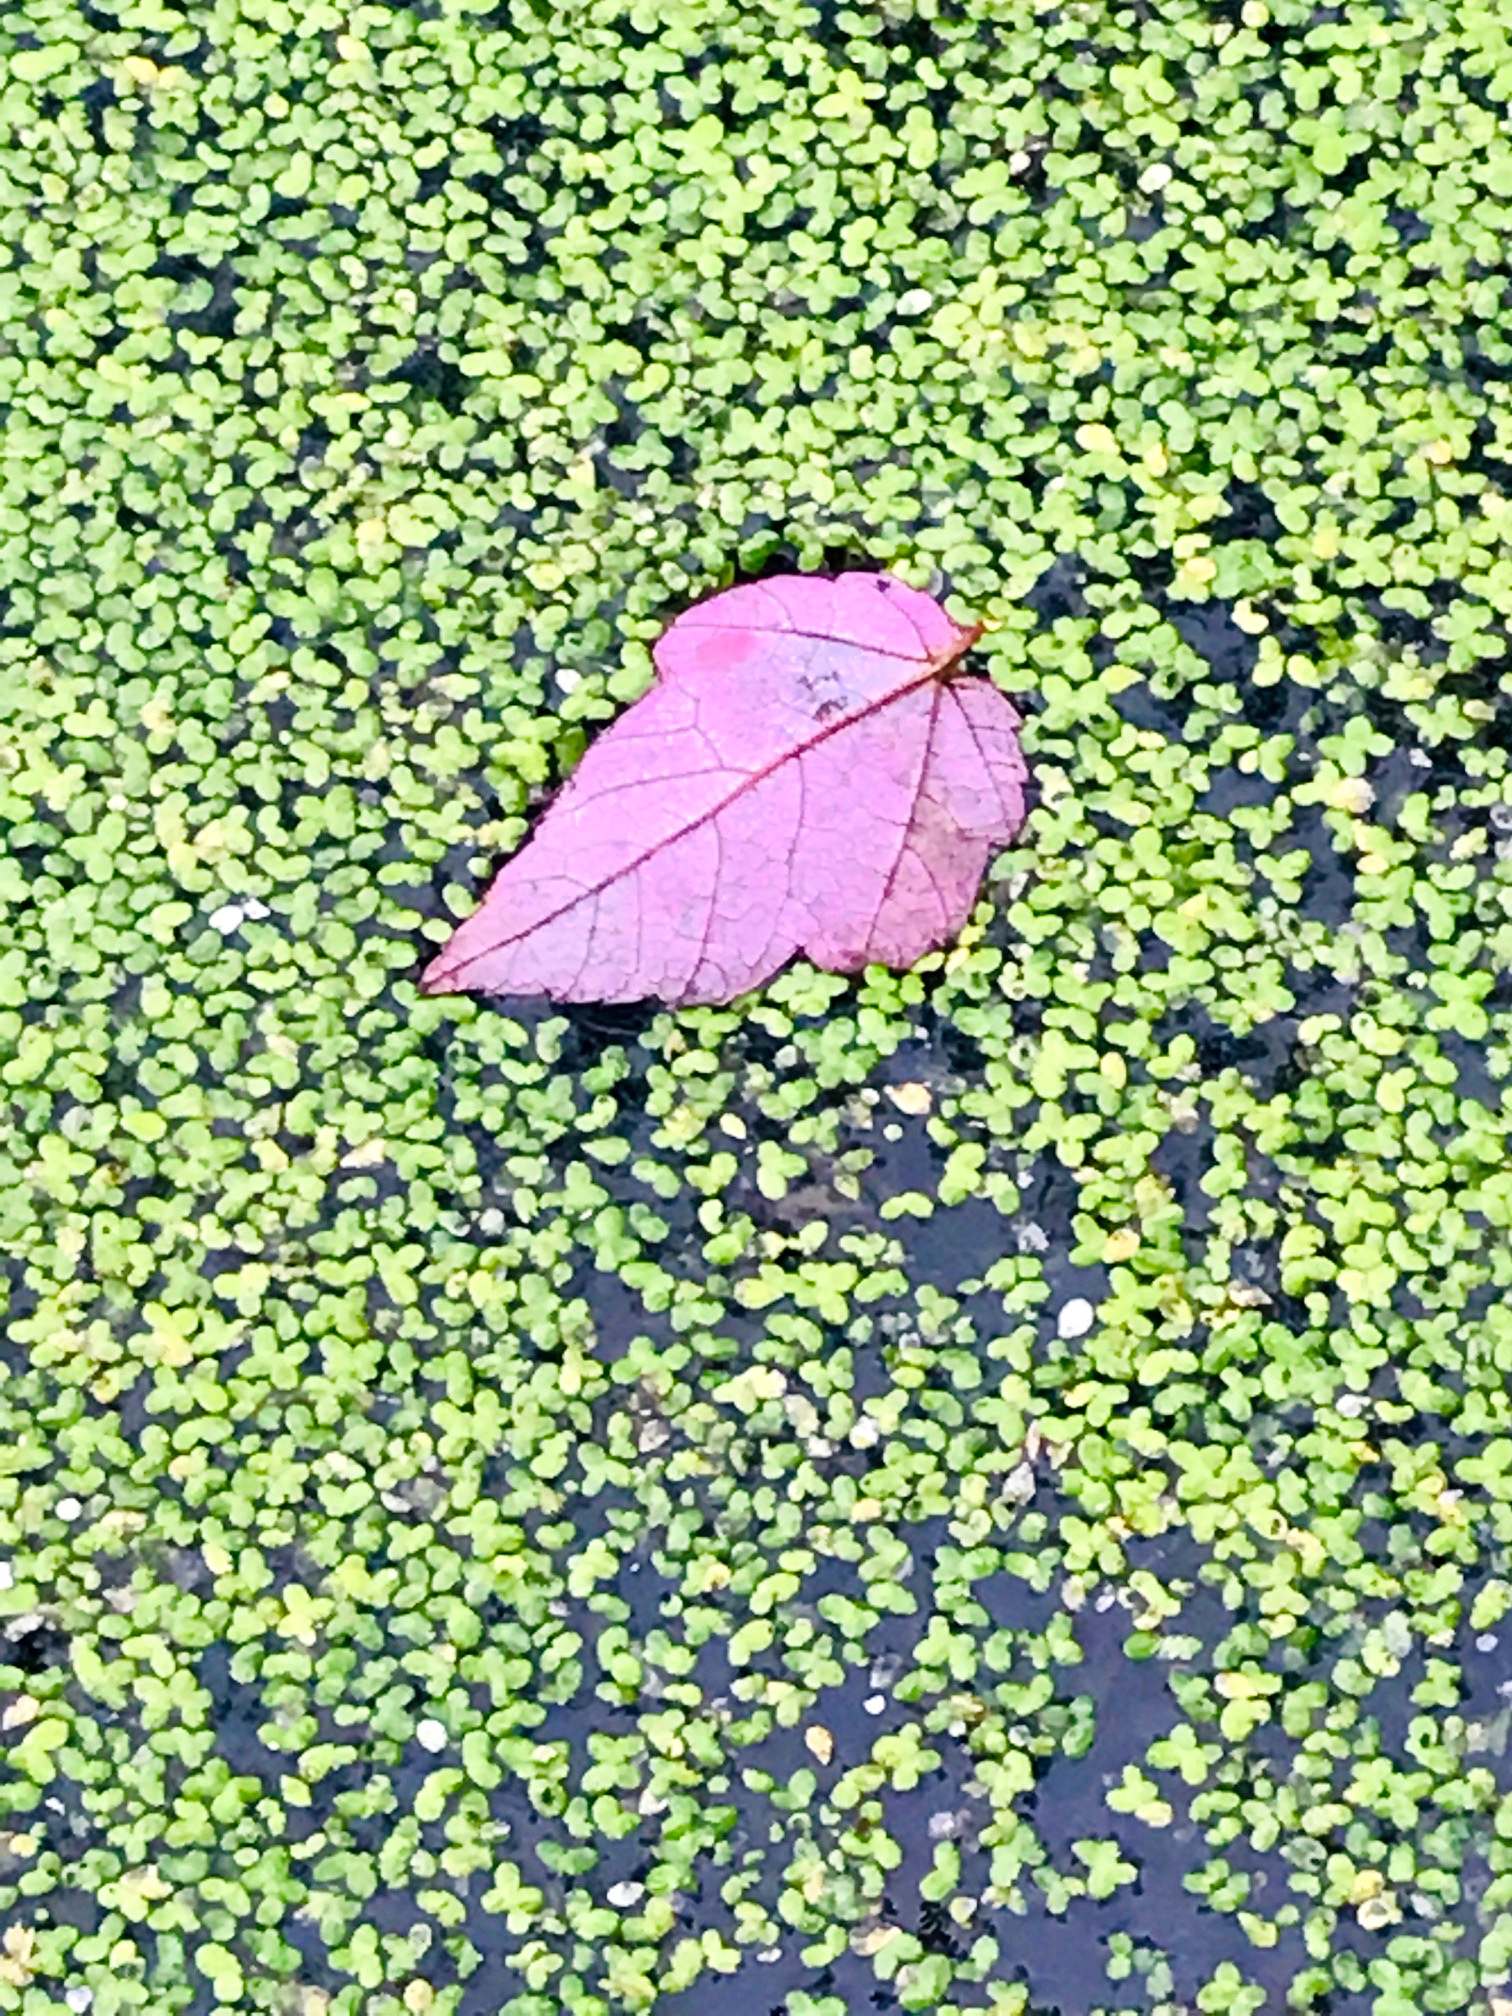 leaf in algae.jpg